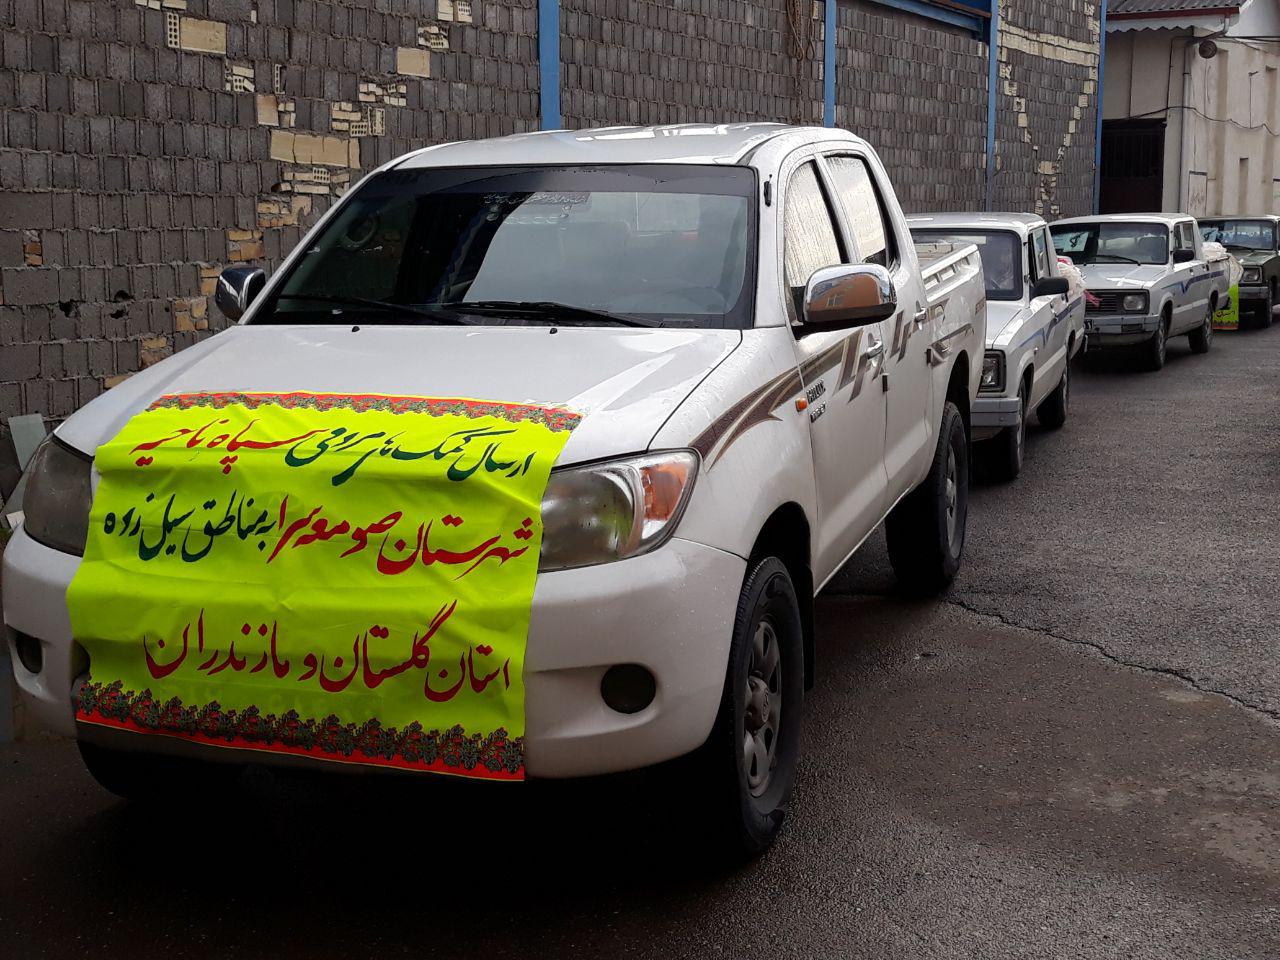 ارسال دومین محموله کمک های جمع آوری شده سپاه صومعه سرا به مناطق سیل زده + تصاویر